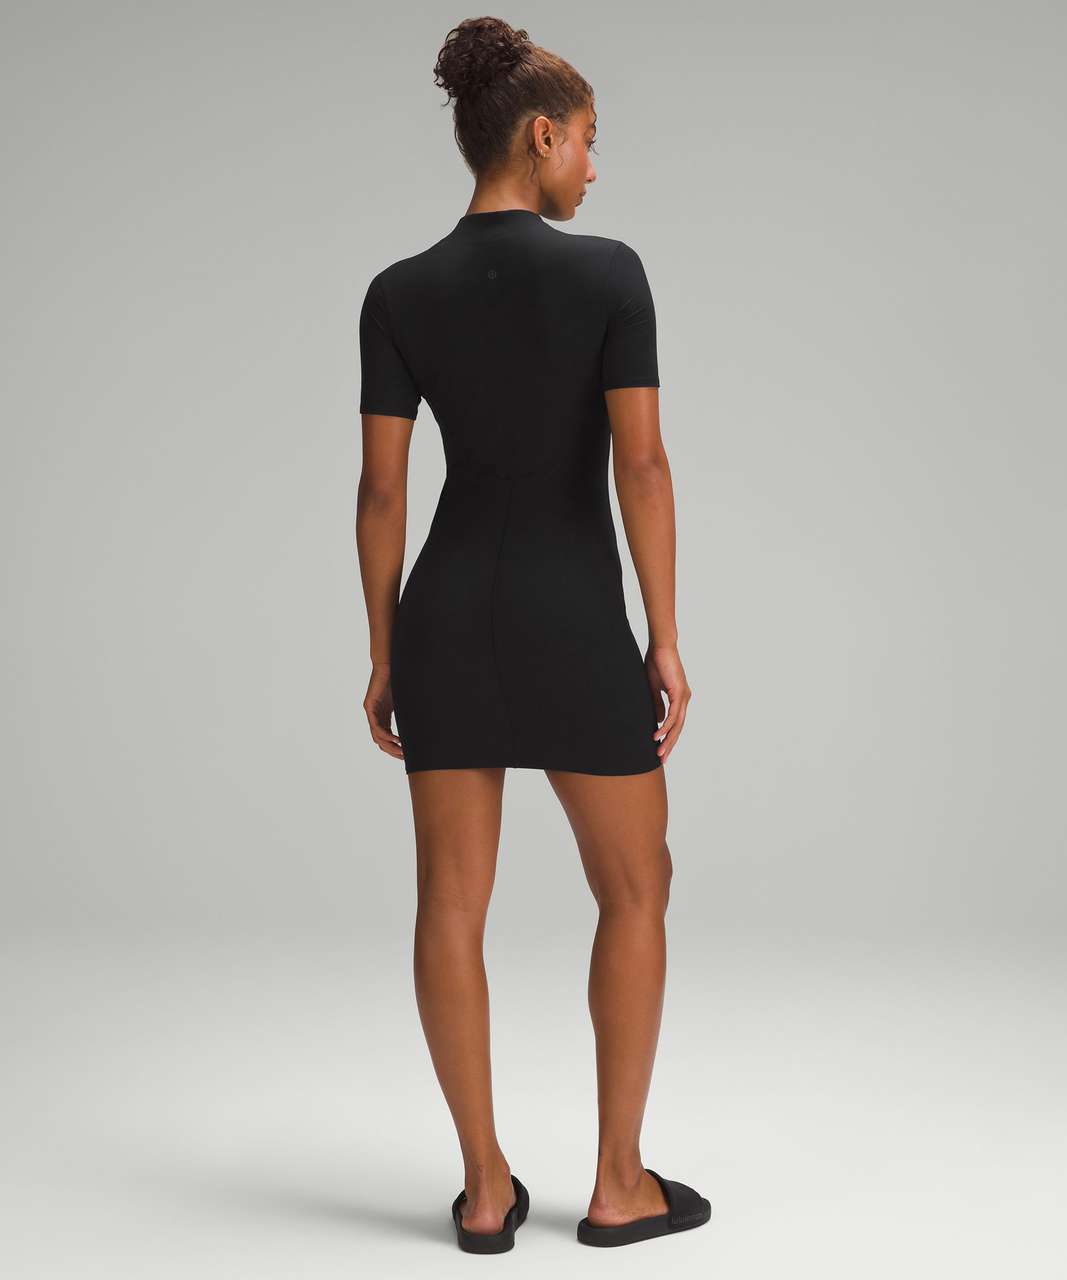 Lululemon All Aligned Ribbed Short-Sleeve Dress - Black